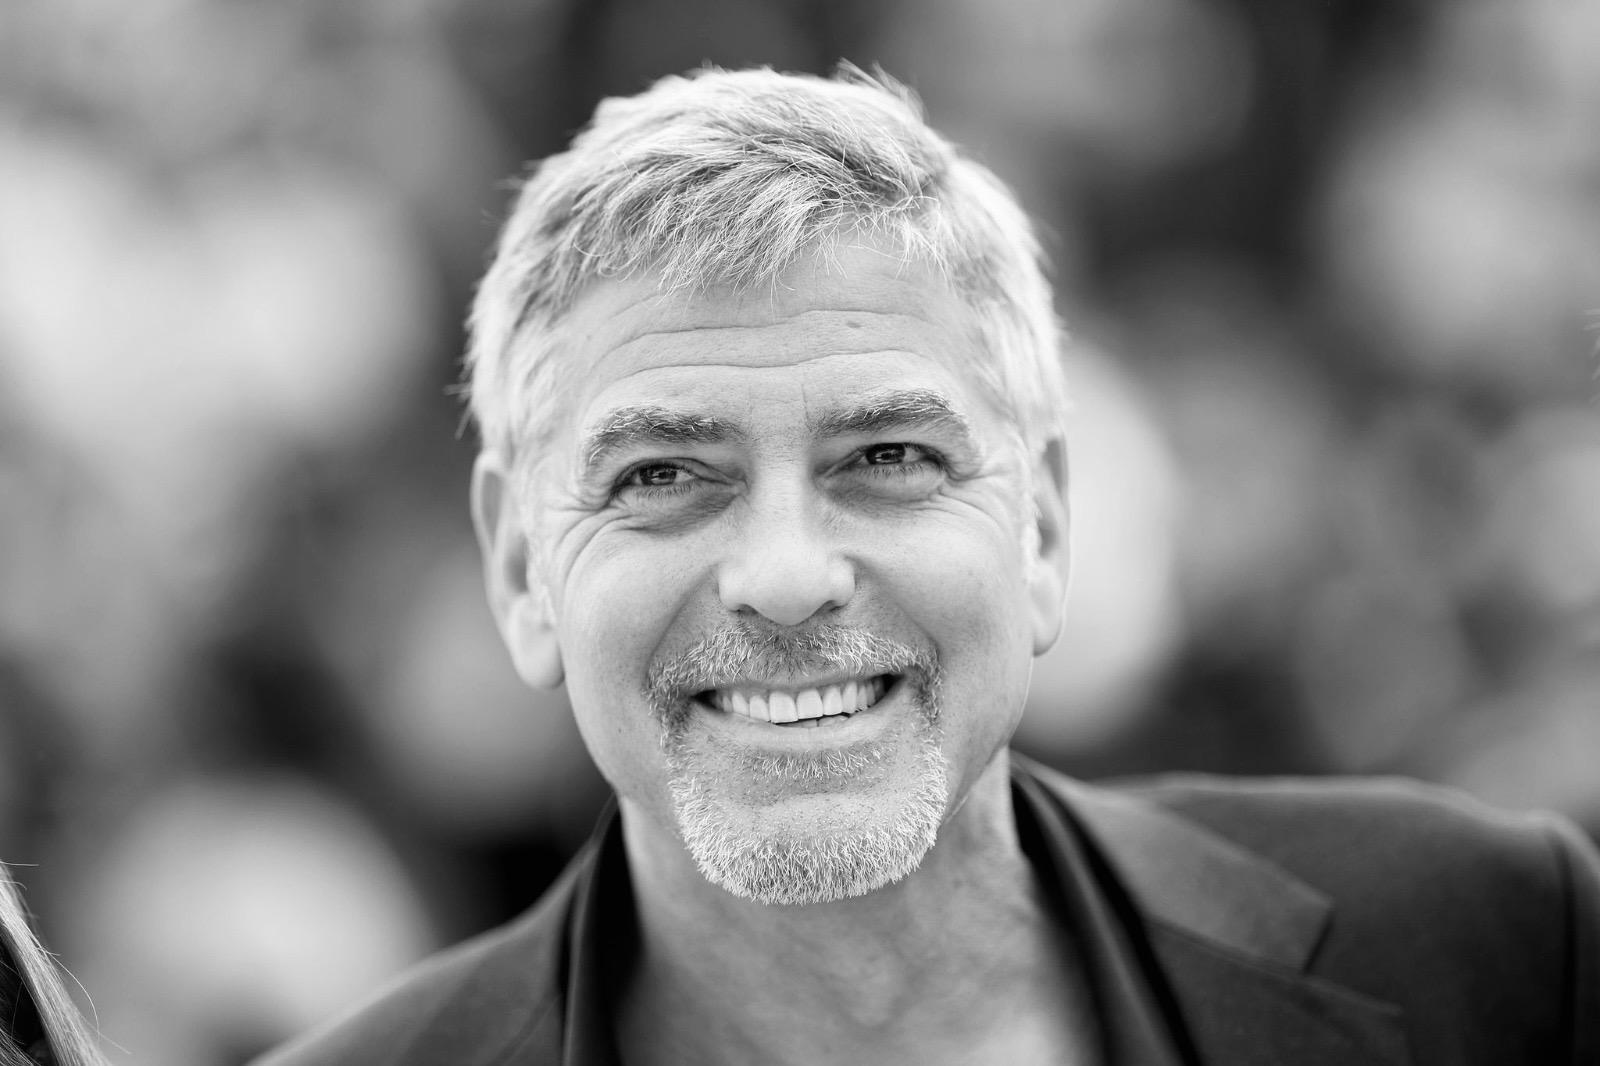 George Clooney a Montalcino per girare un film. Sul set anche Adam Sandler e Riley Keough